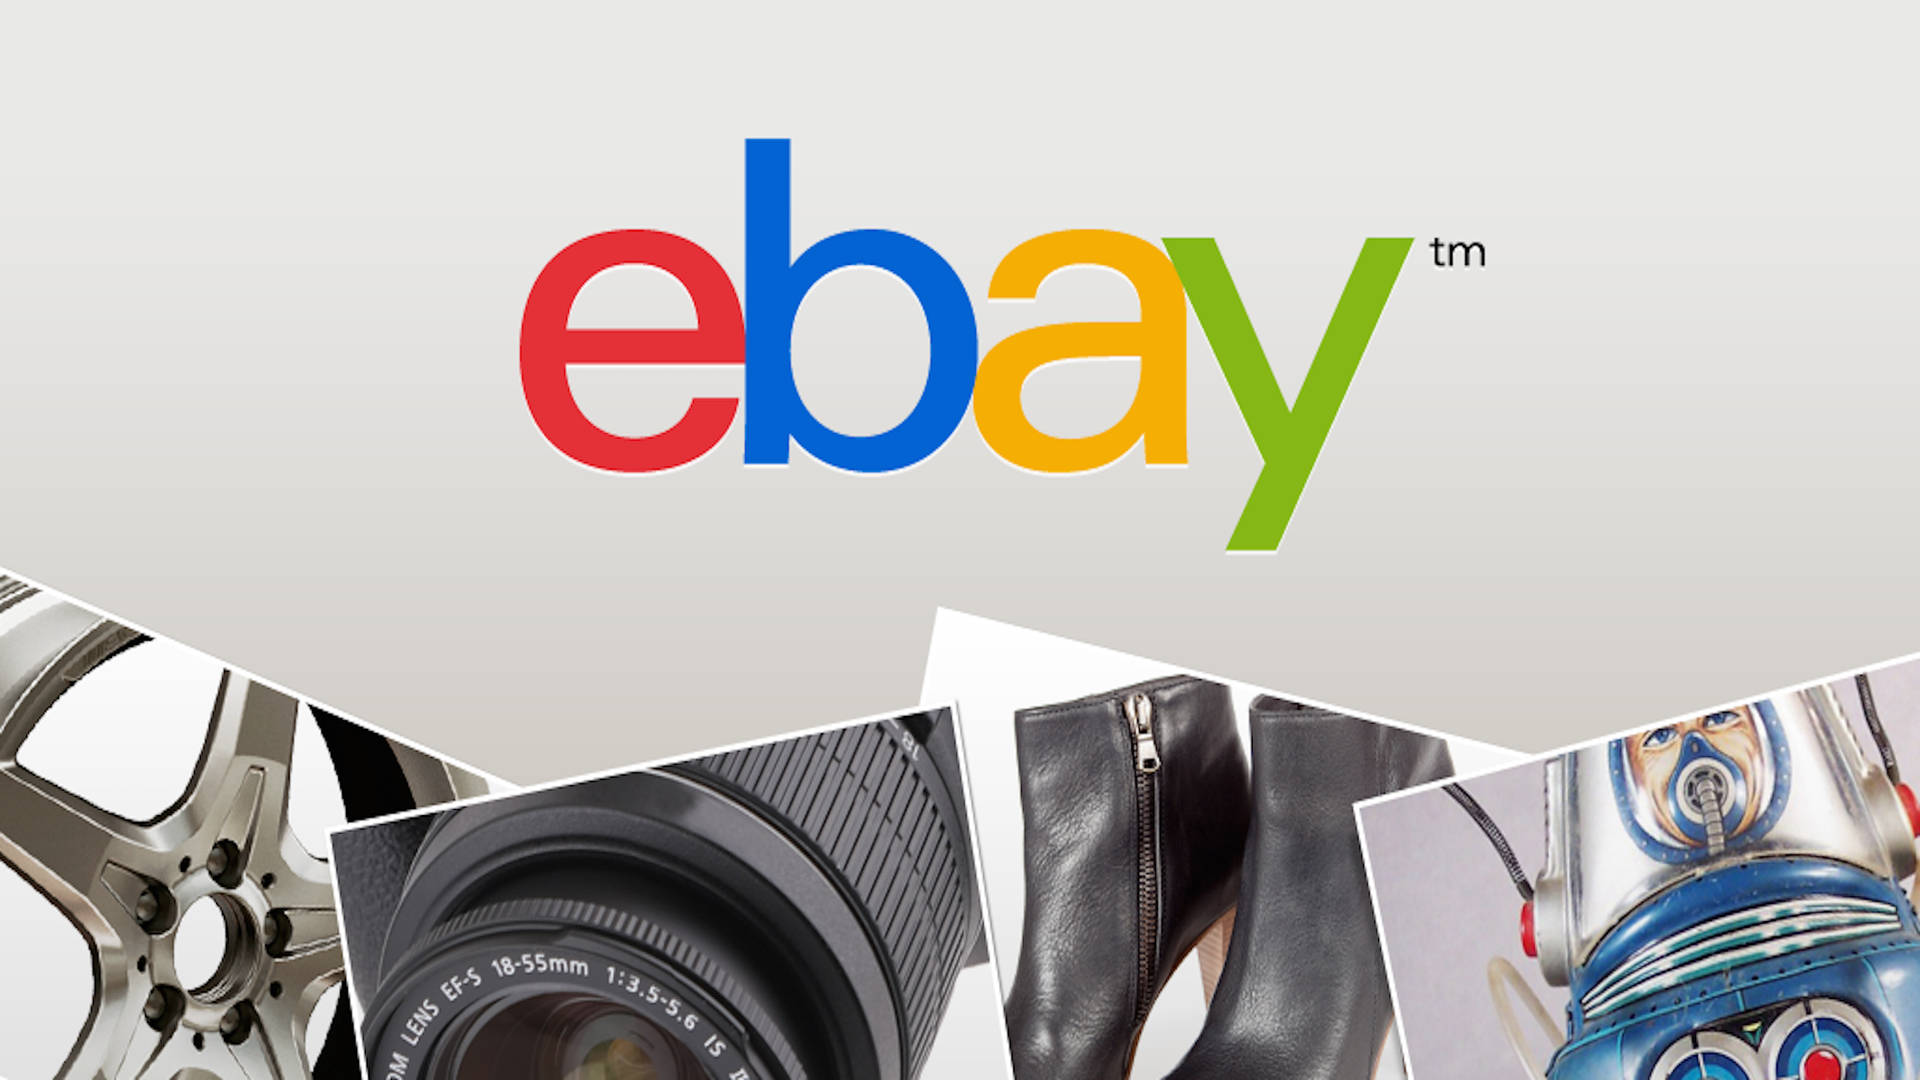 Ebay Website Logo Wallpaper